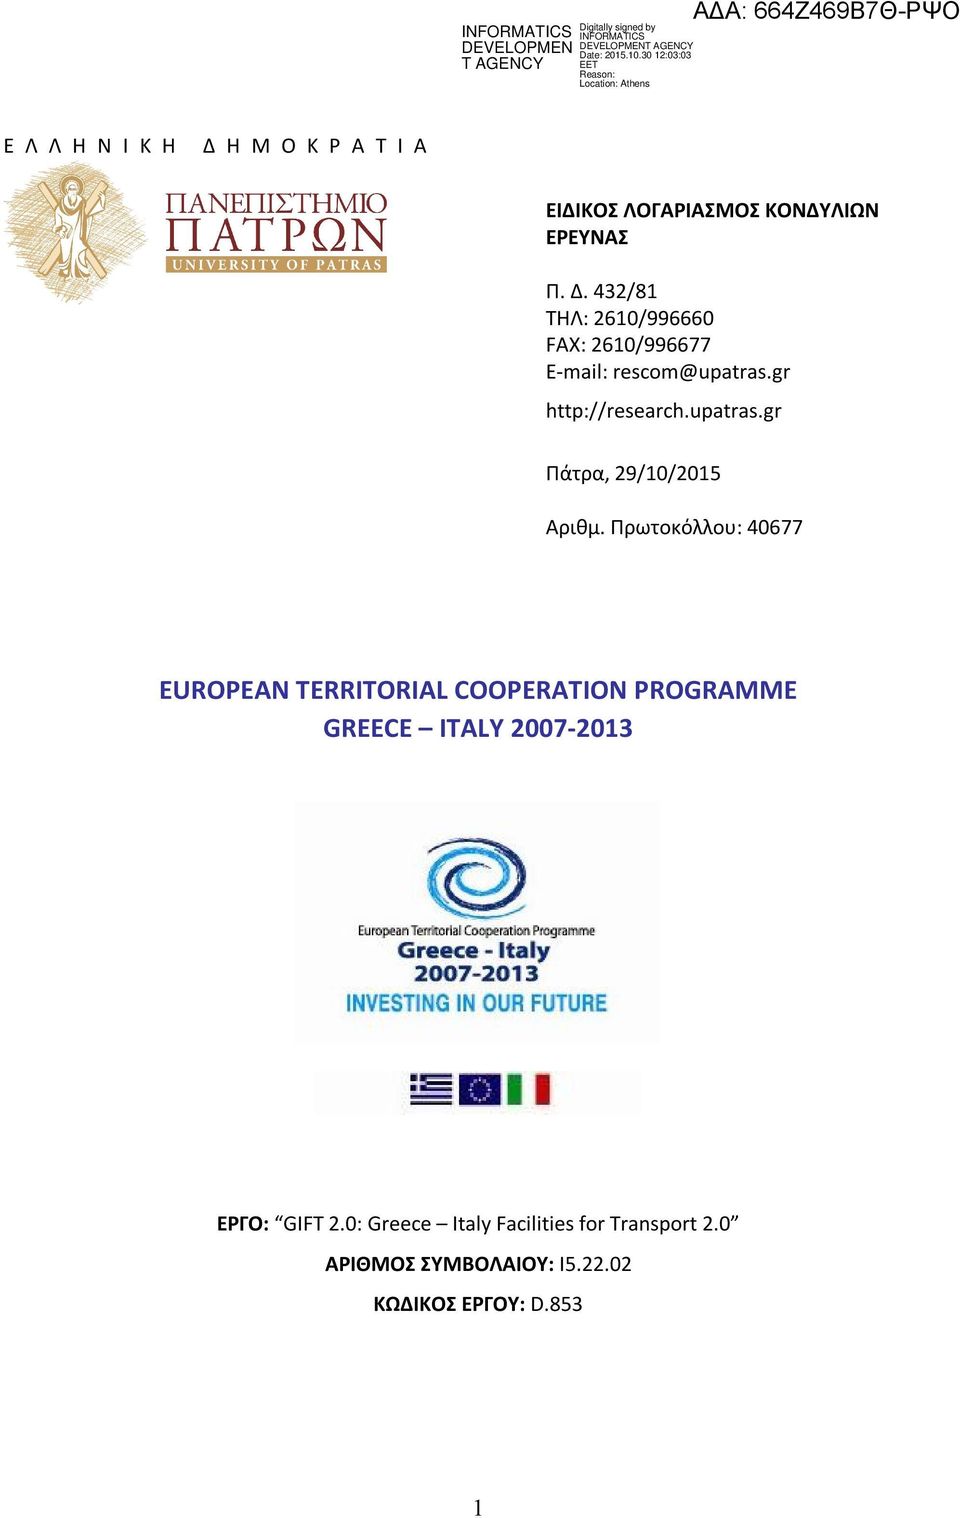 Πρωτοκόλλου: 40677 EUROPEAN TERRITORIAL COOPERATION PROGRAMME GREECE ITALY 2007-2013 ΕΡΓΟ: GIFT 2.